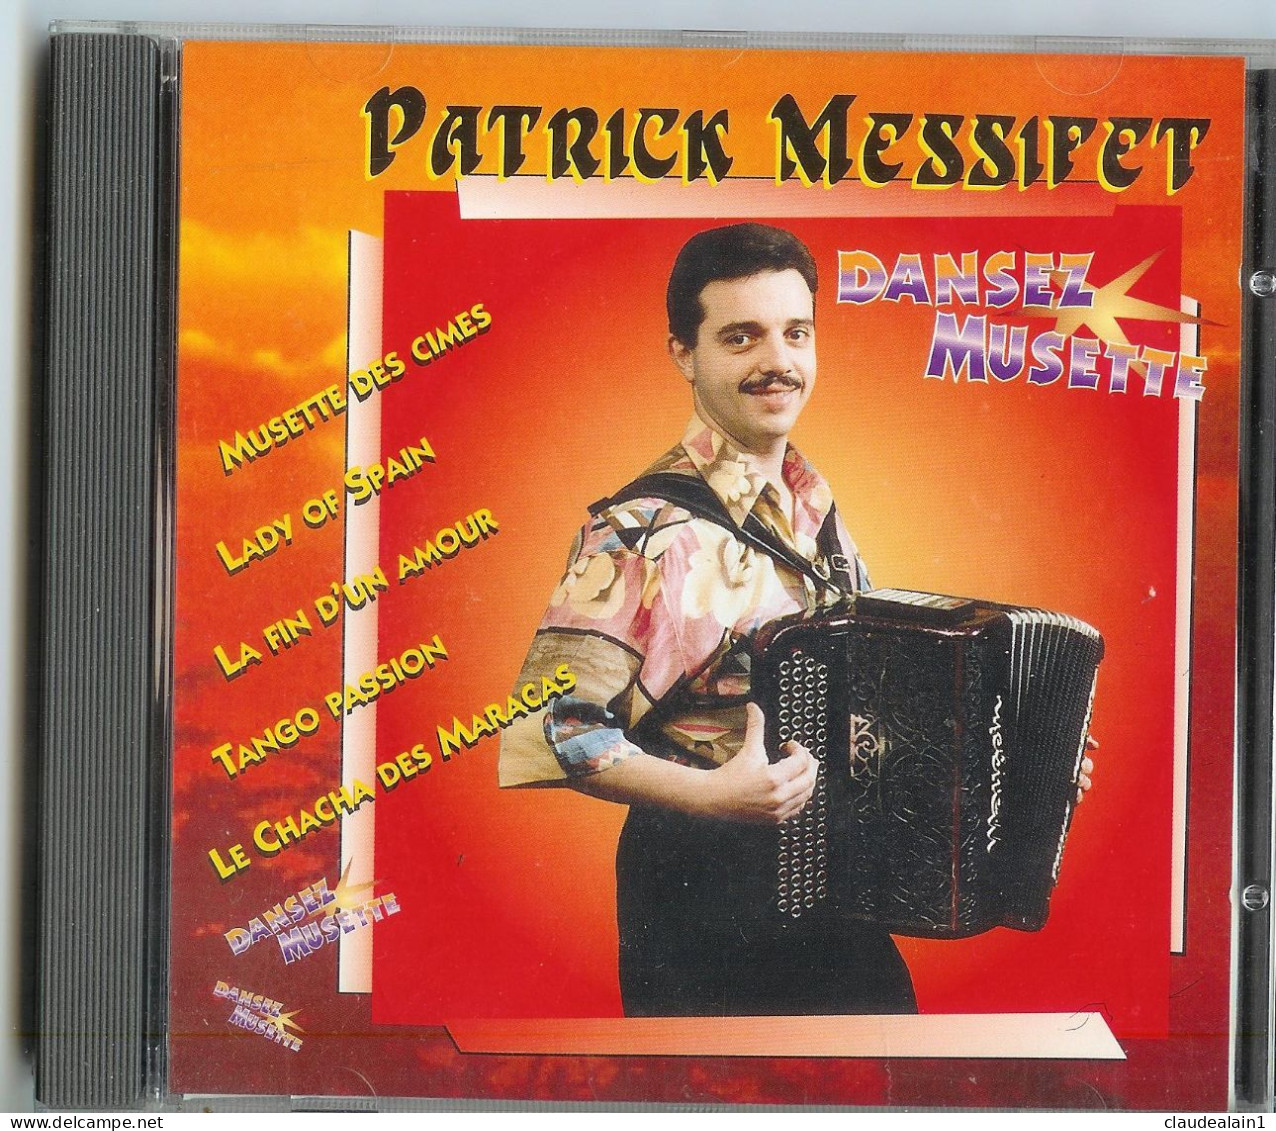 ALBUM CD PATRICK MESSIFET - DANSEZ MUSETTE (12 Titres) - Très Bon état - Instrumental